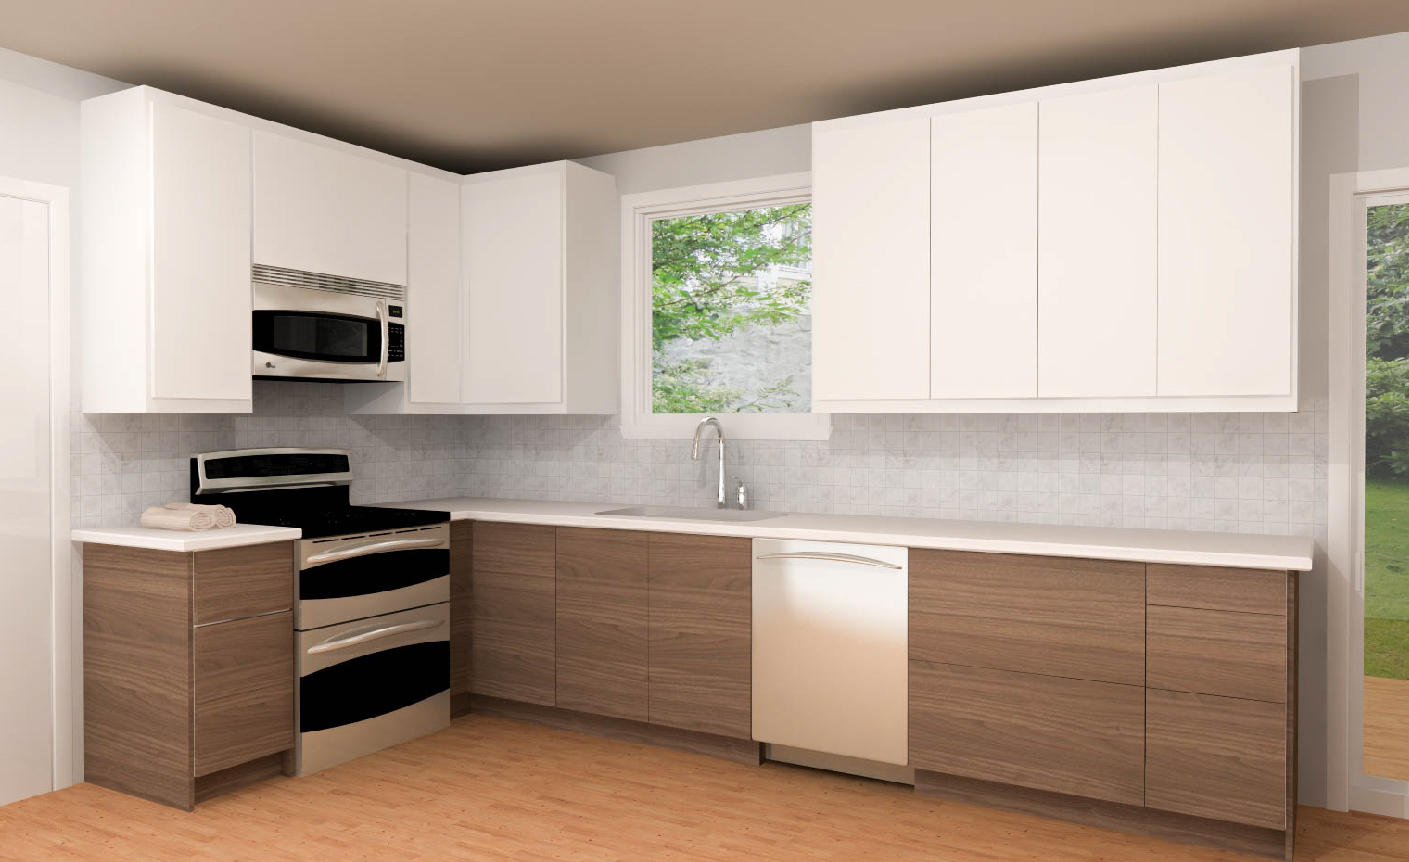 three ikea kitchens cabinet designs under $5,000 ikea